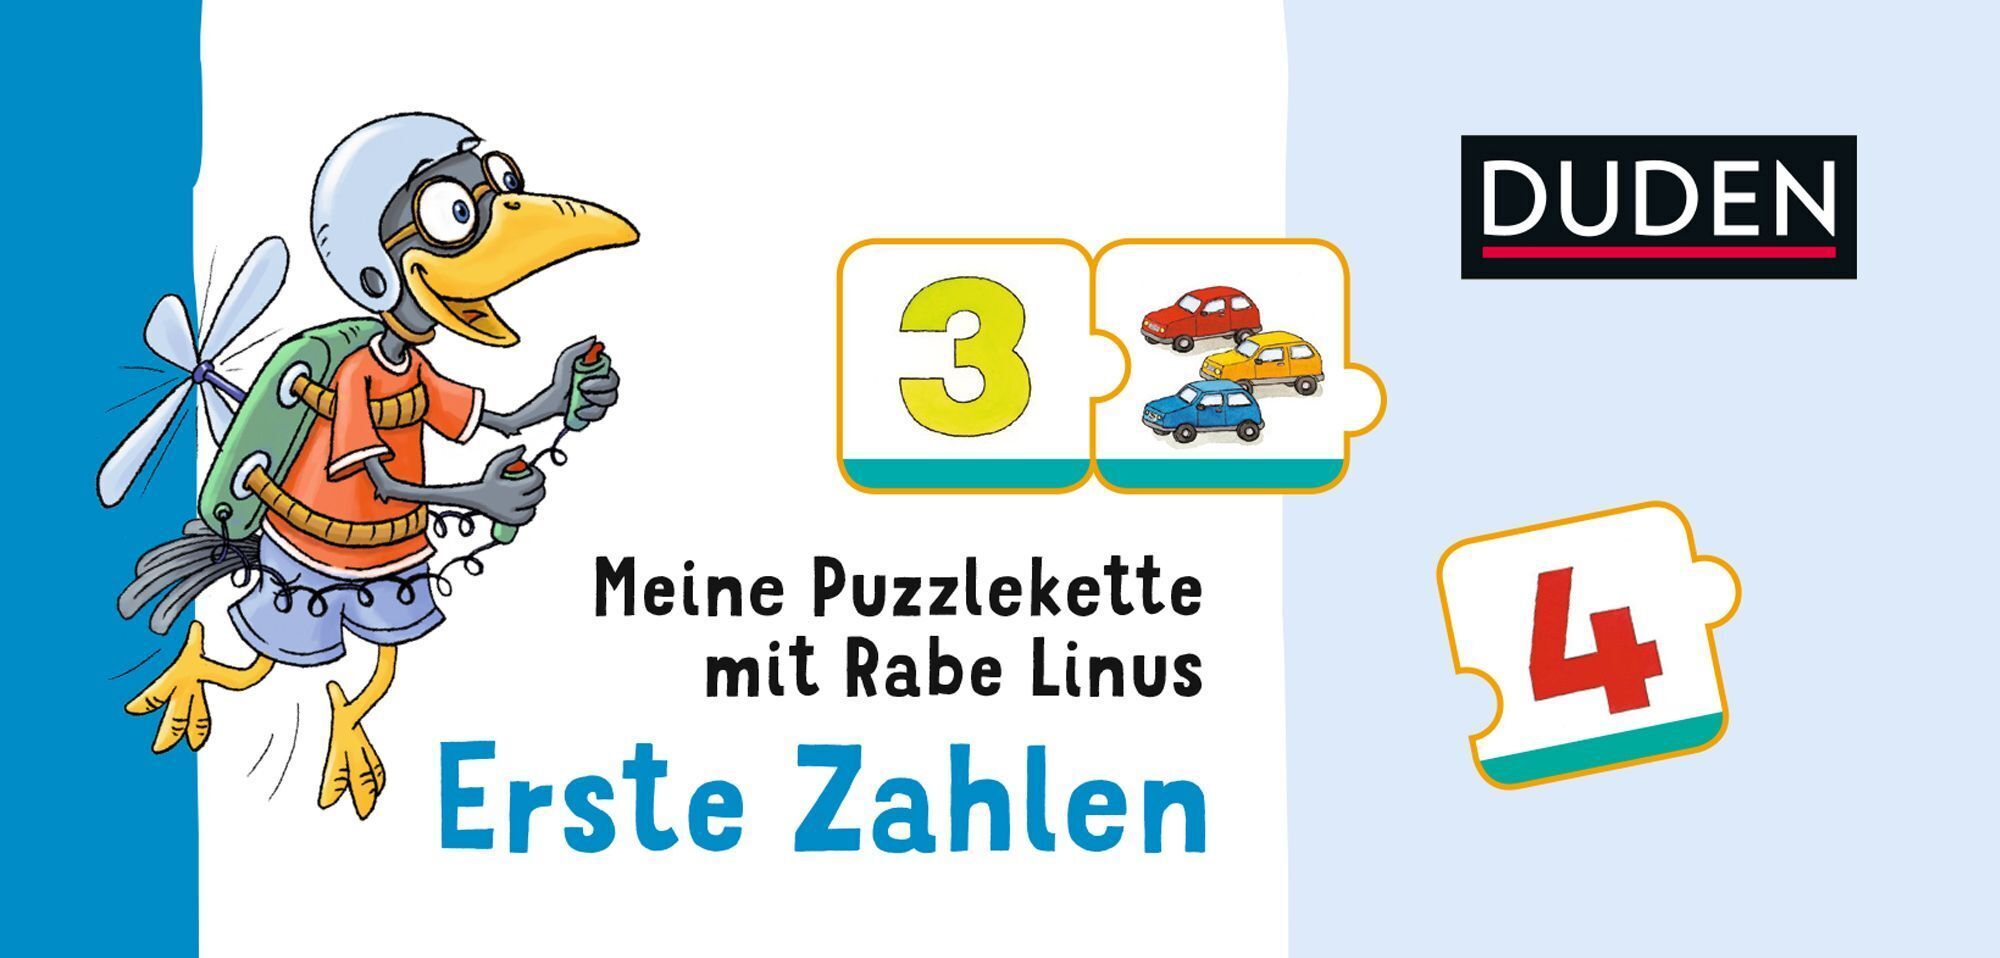 Duden: Meine Puzzlekette mit Rabe Linus - Erste Zahlen